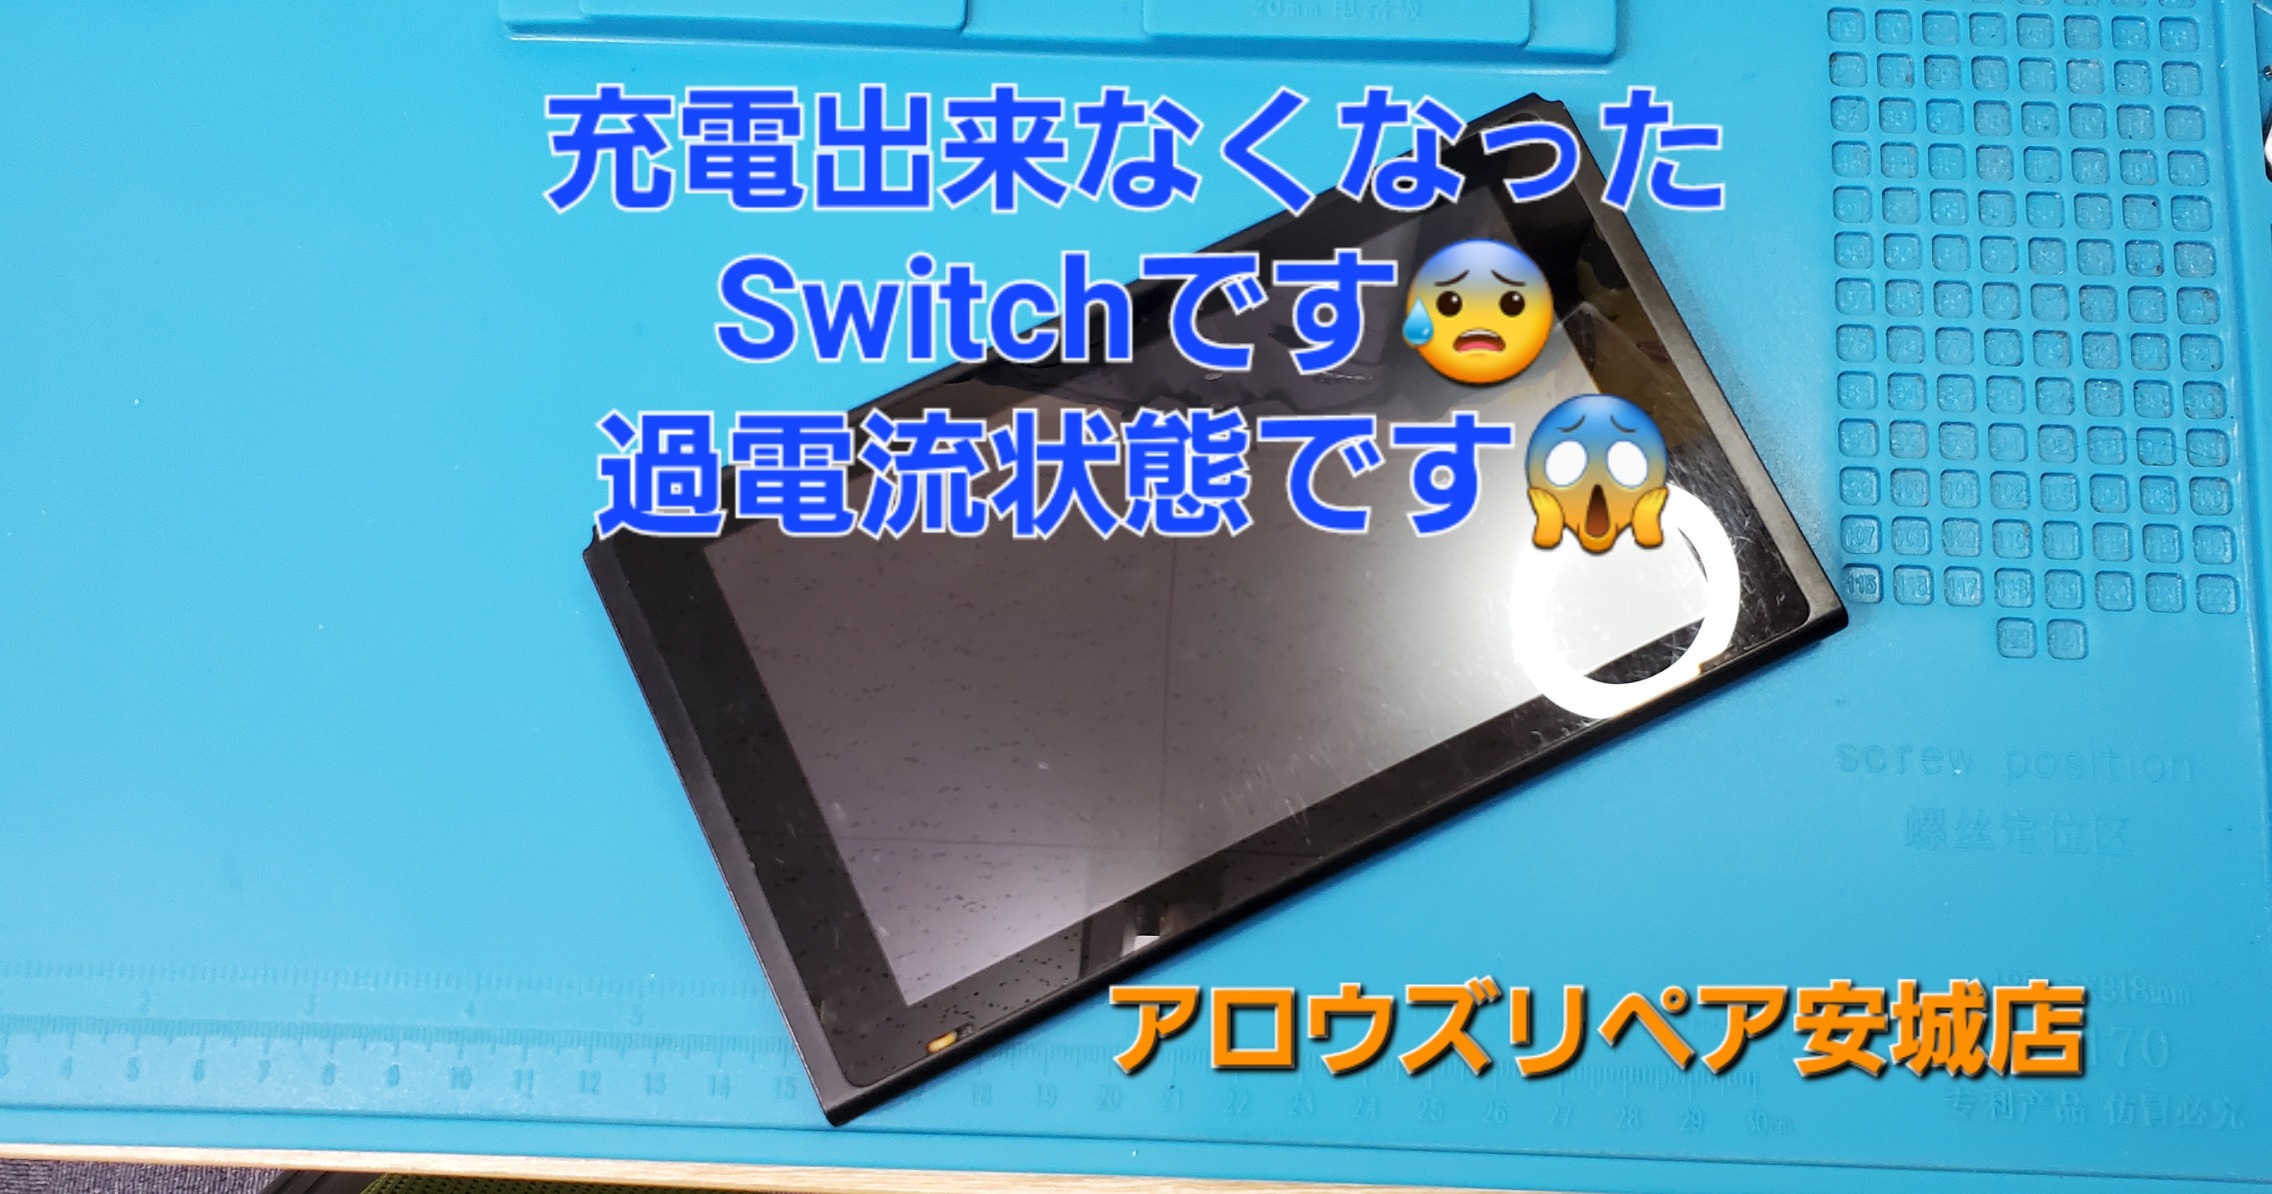 岡崎市よりご来店、Nintendo Switch基盤修理のご紹介。|安城駅徒歩3分|iPhone・Switch・iPad修理ならアロウズリペア安城がおすすめ！JR安城駅から徒歩3分、データそのまま即日修理、Switch修理もお任せ下さい。お客様のお悩み解決致します。